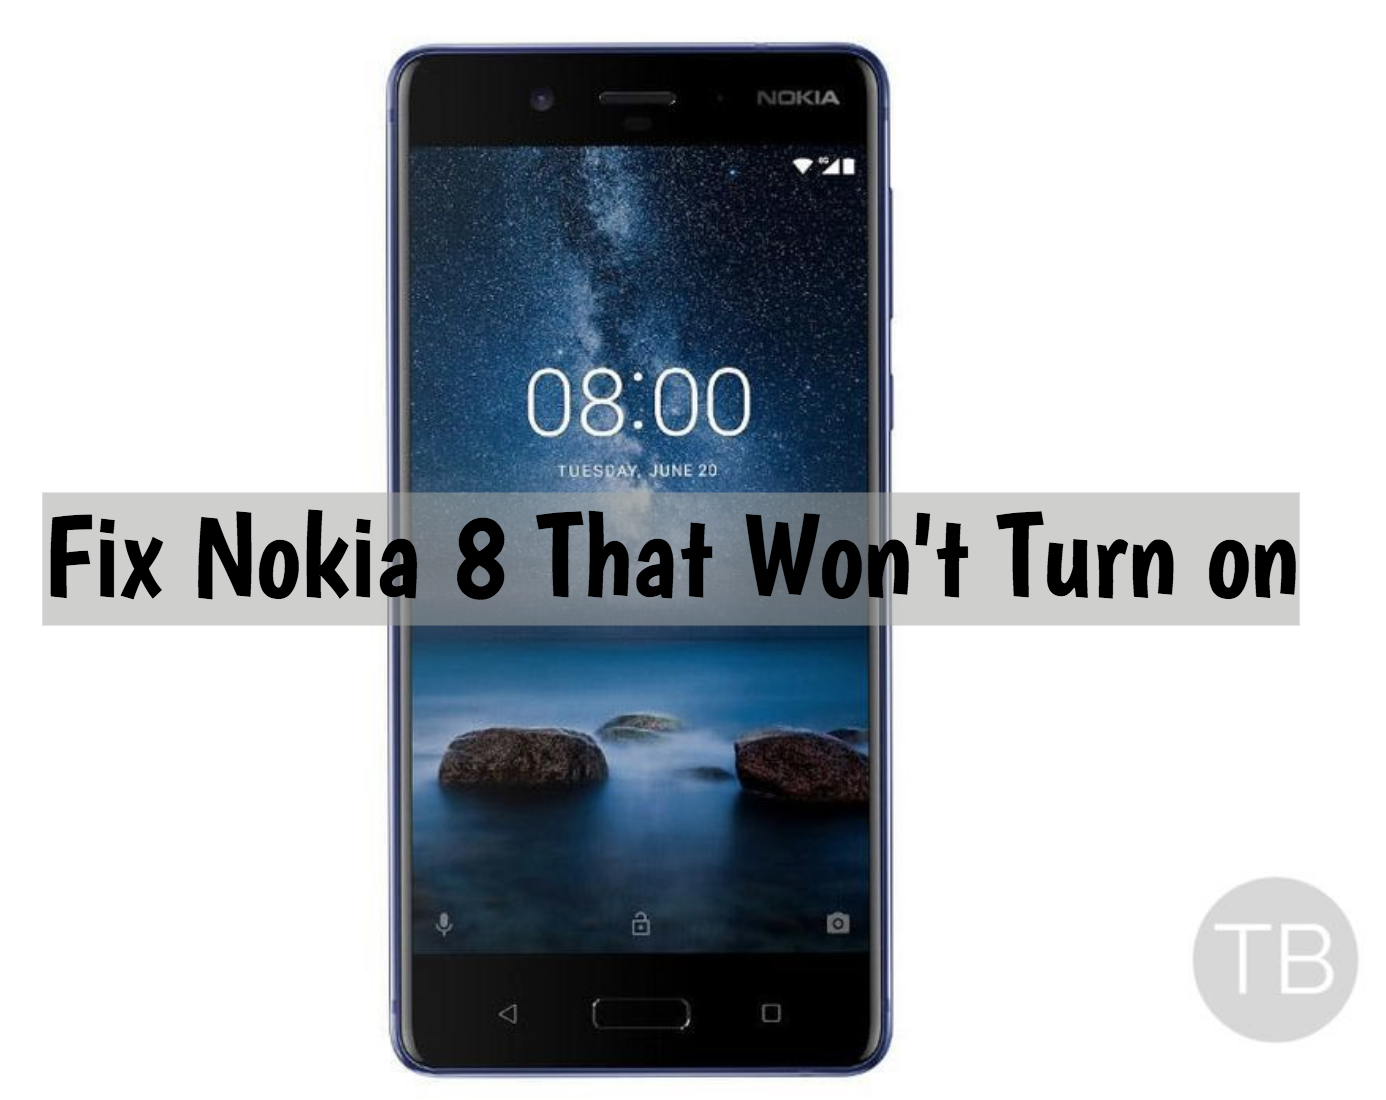 Nokia 8 That Won't Turn on